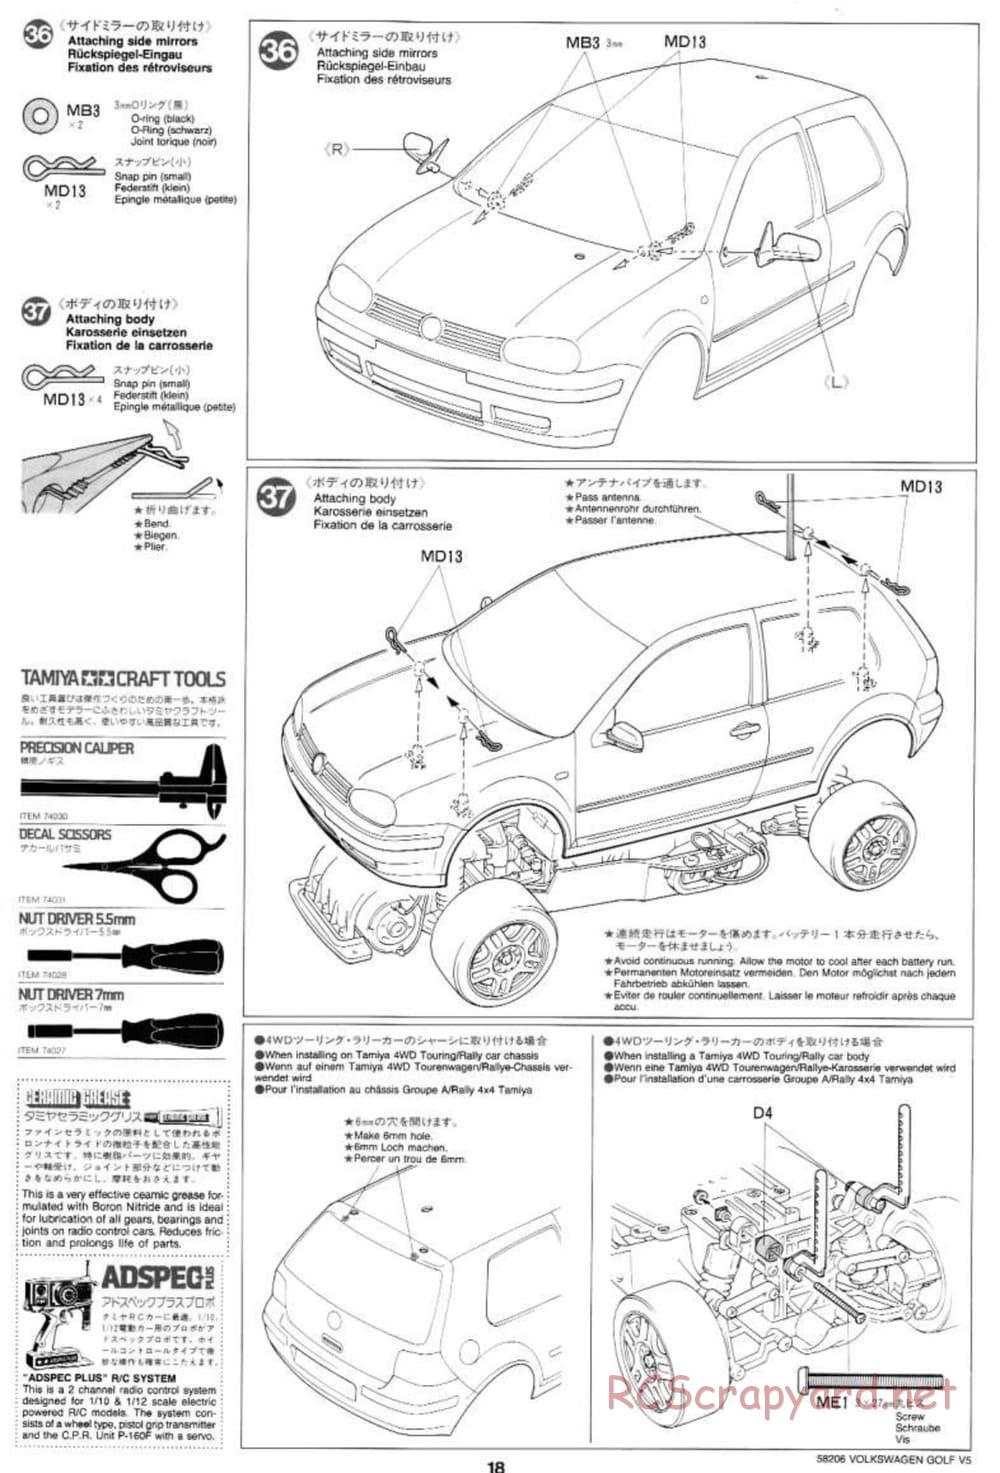 Tamiya - Volkswagen Golf V5 - FF-01 Chassis - Manual - Page 18